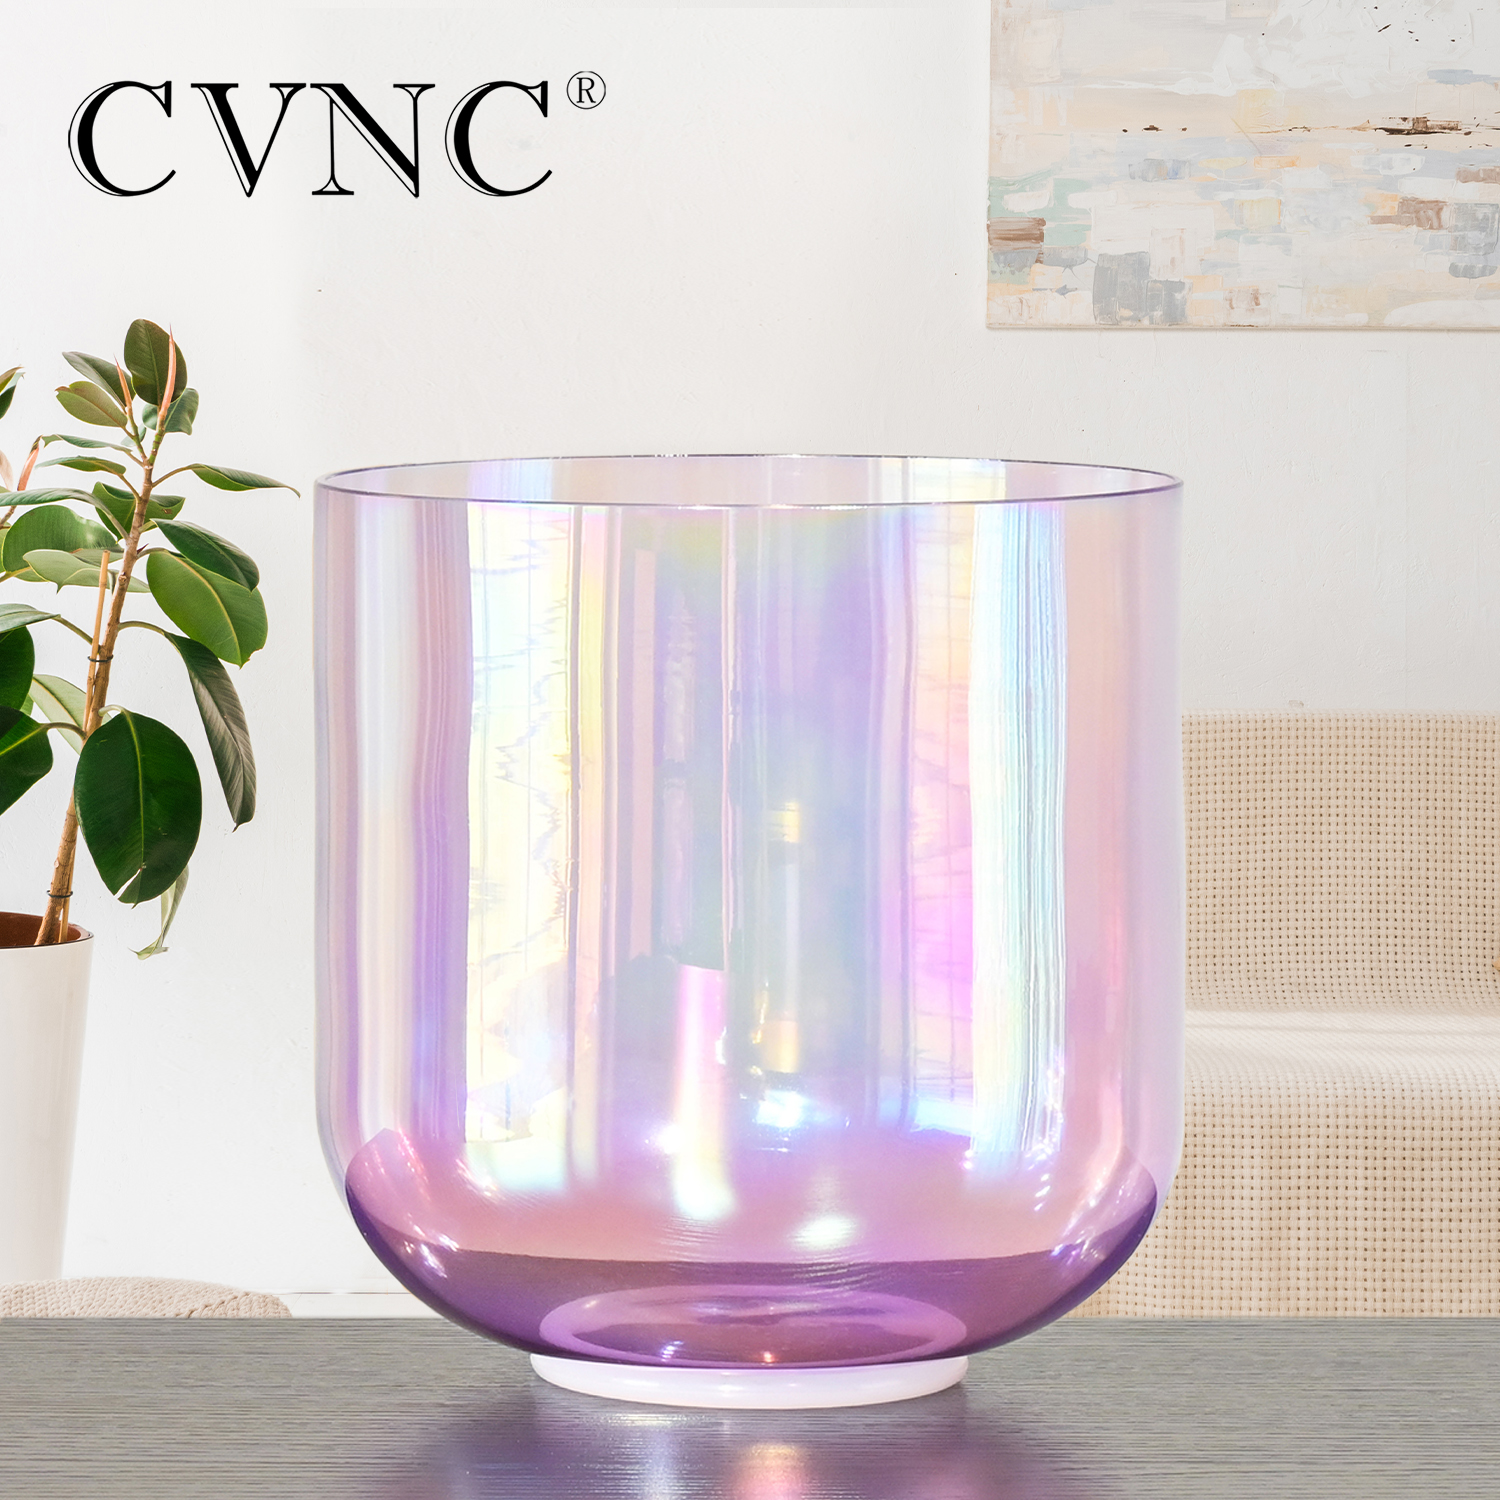 CVNC 7 pouces Alchimie claire Quartz Crystal Singing Bowl Purple avec lumière cosmique pour guérison sonore avec maillet libre et joint torique